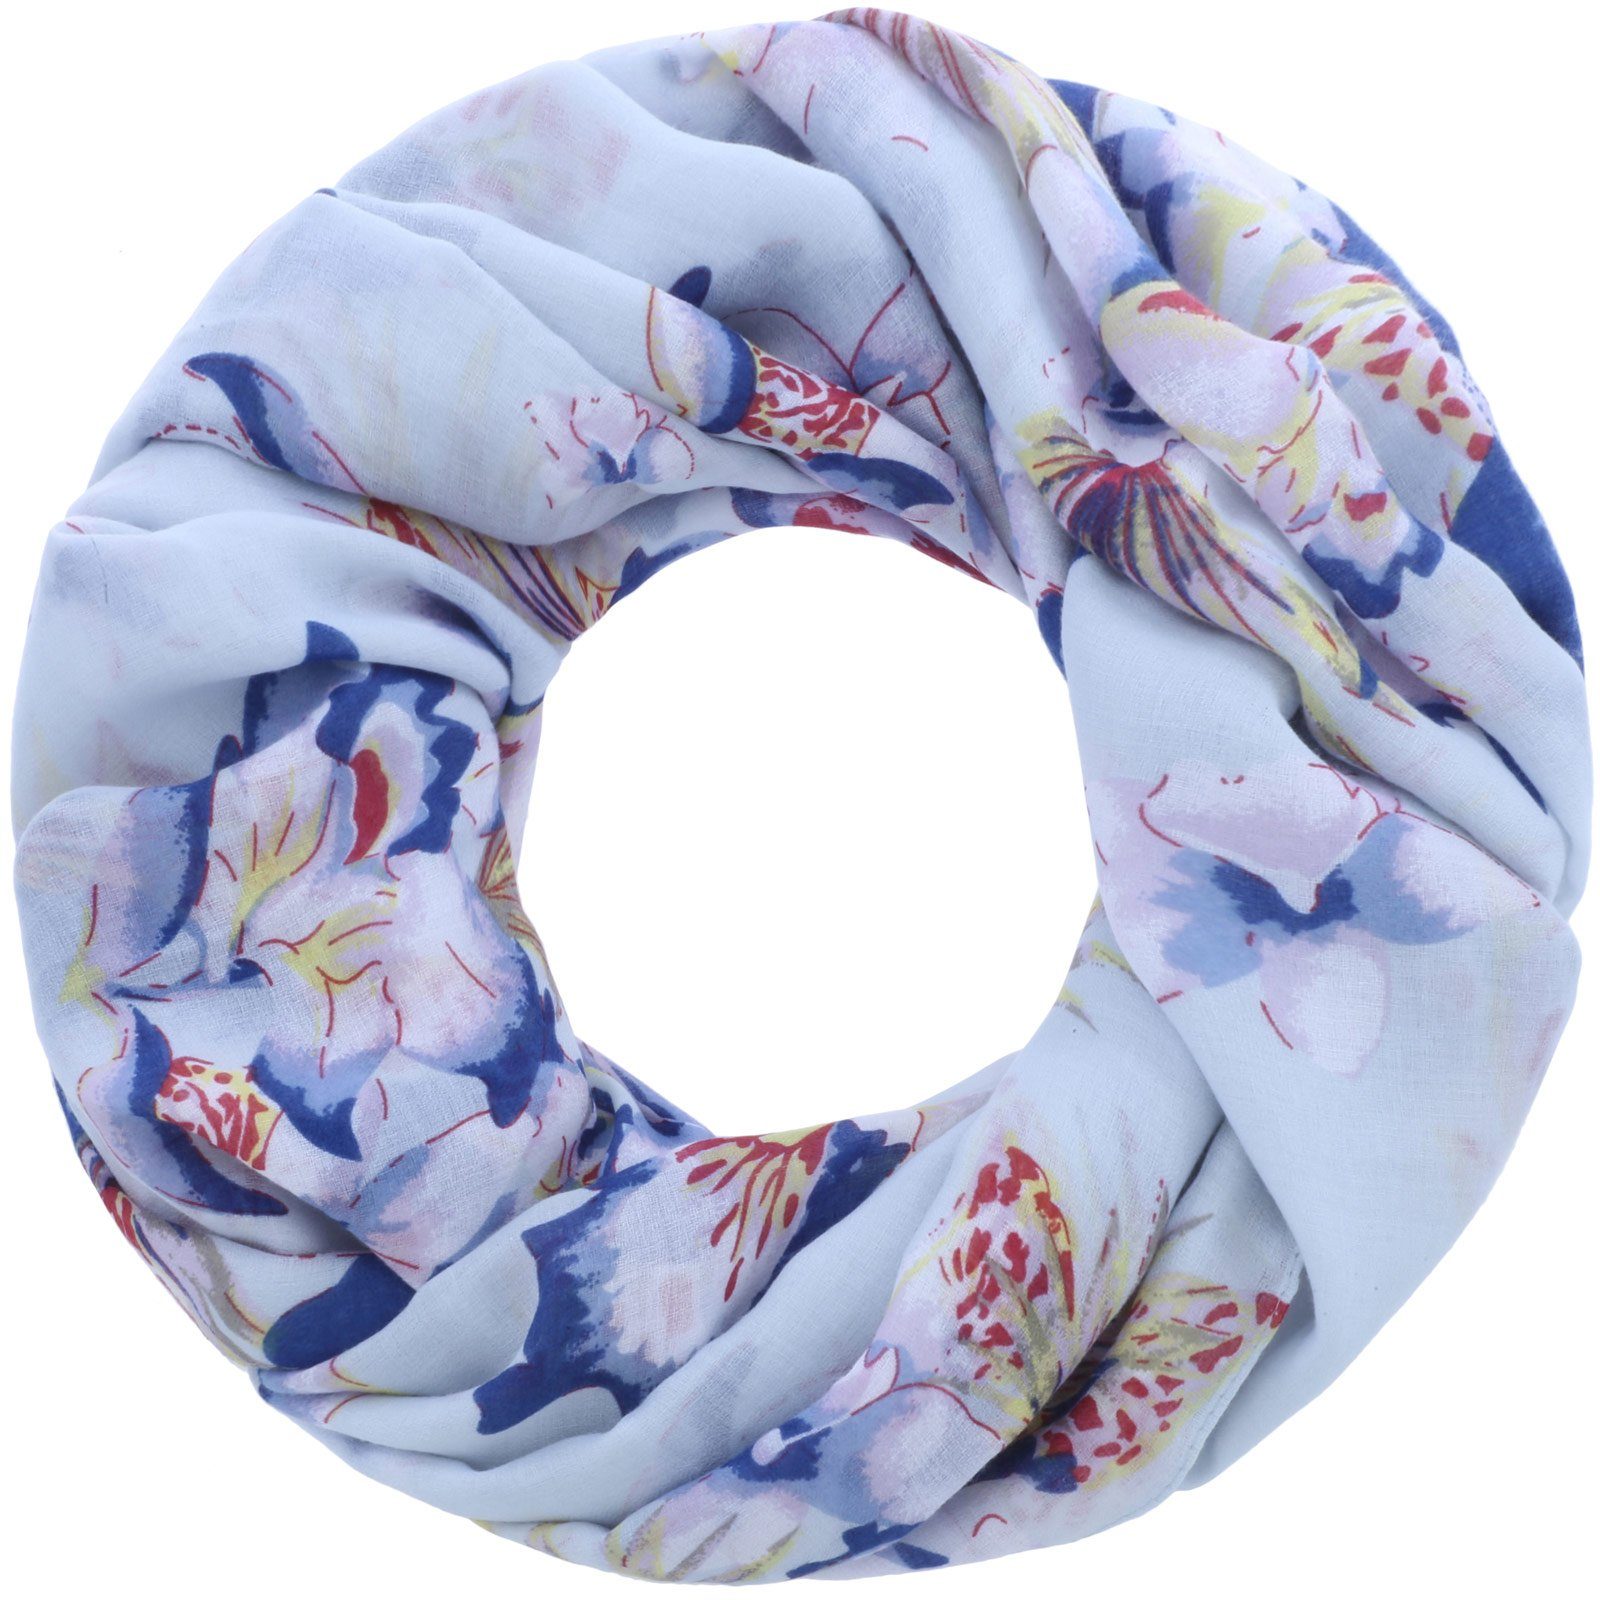 Faera Loop, Damen Schal mit tropischen Blumen weich und leicht Loopschal Rundschal hellblau